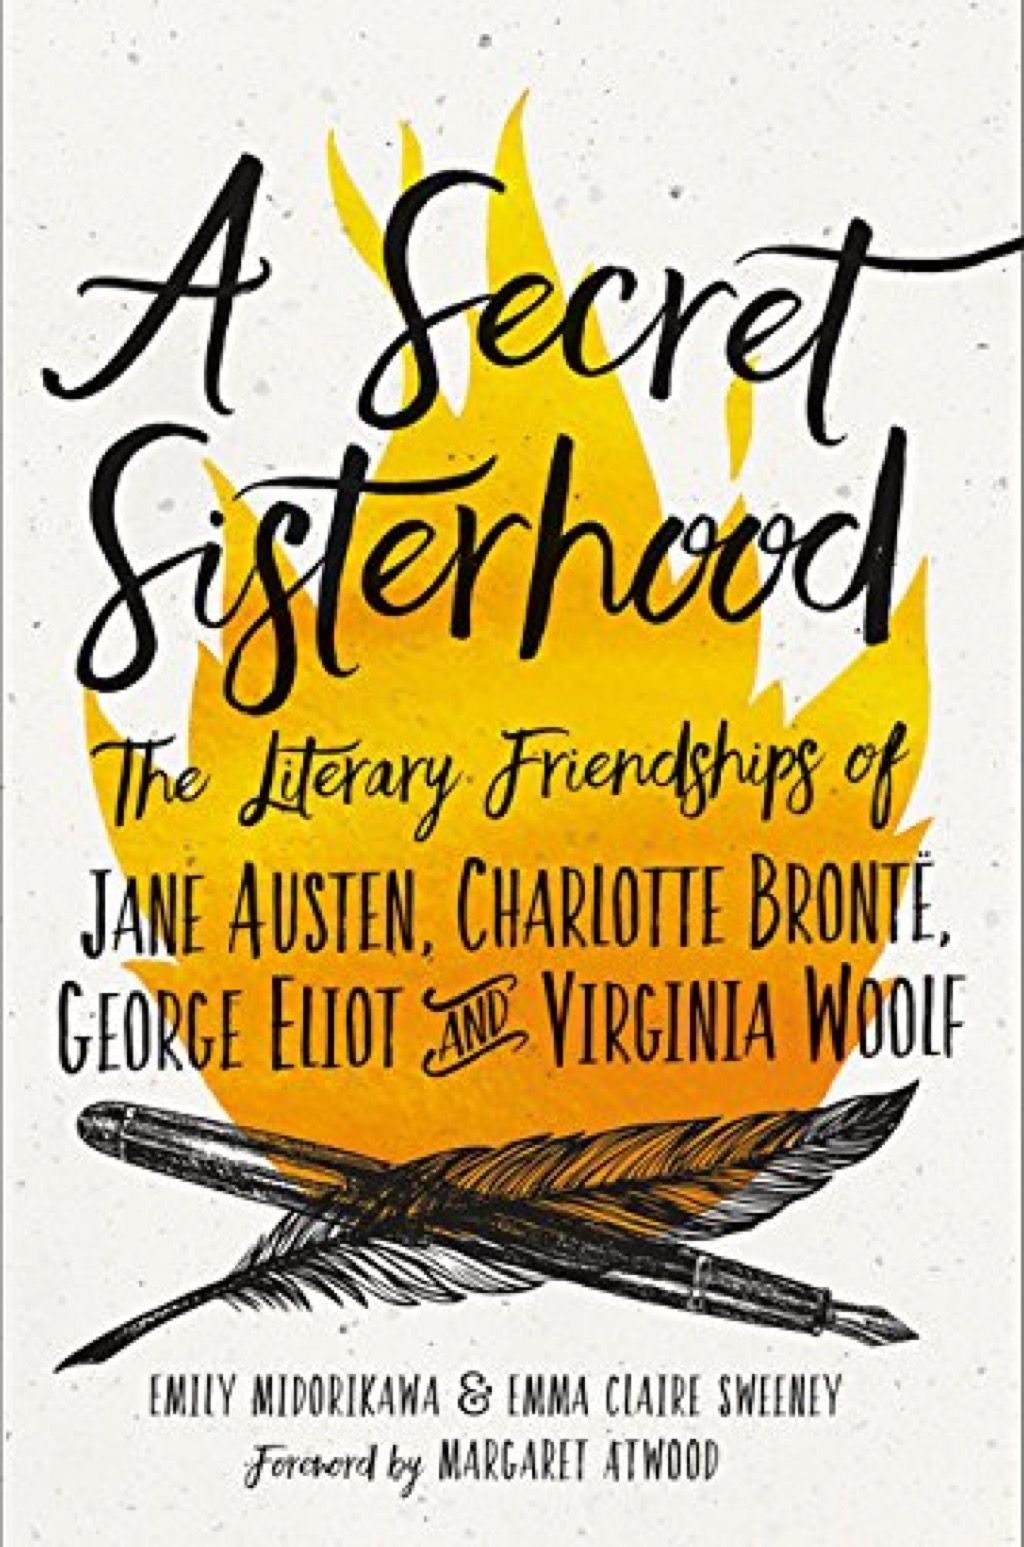 หนังสือ Secret Sisterhood ที่ผู้หญิงทุกคนควรอ่านในวัย 40 ปี